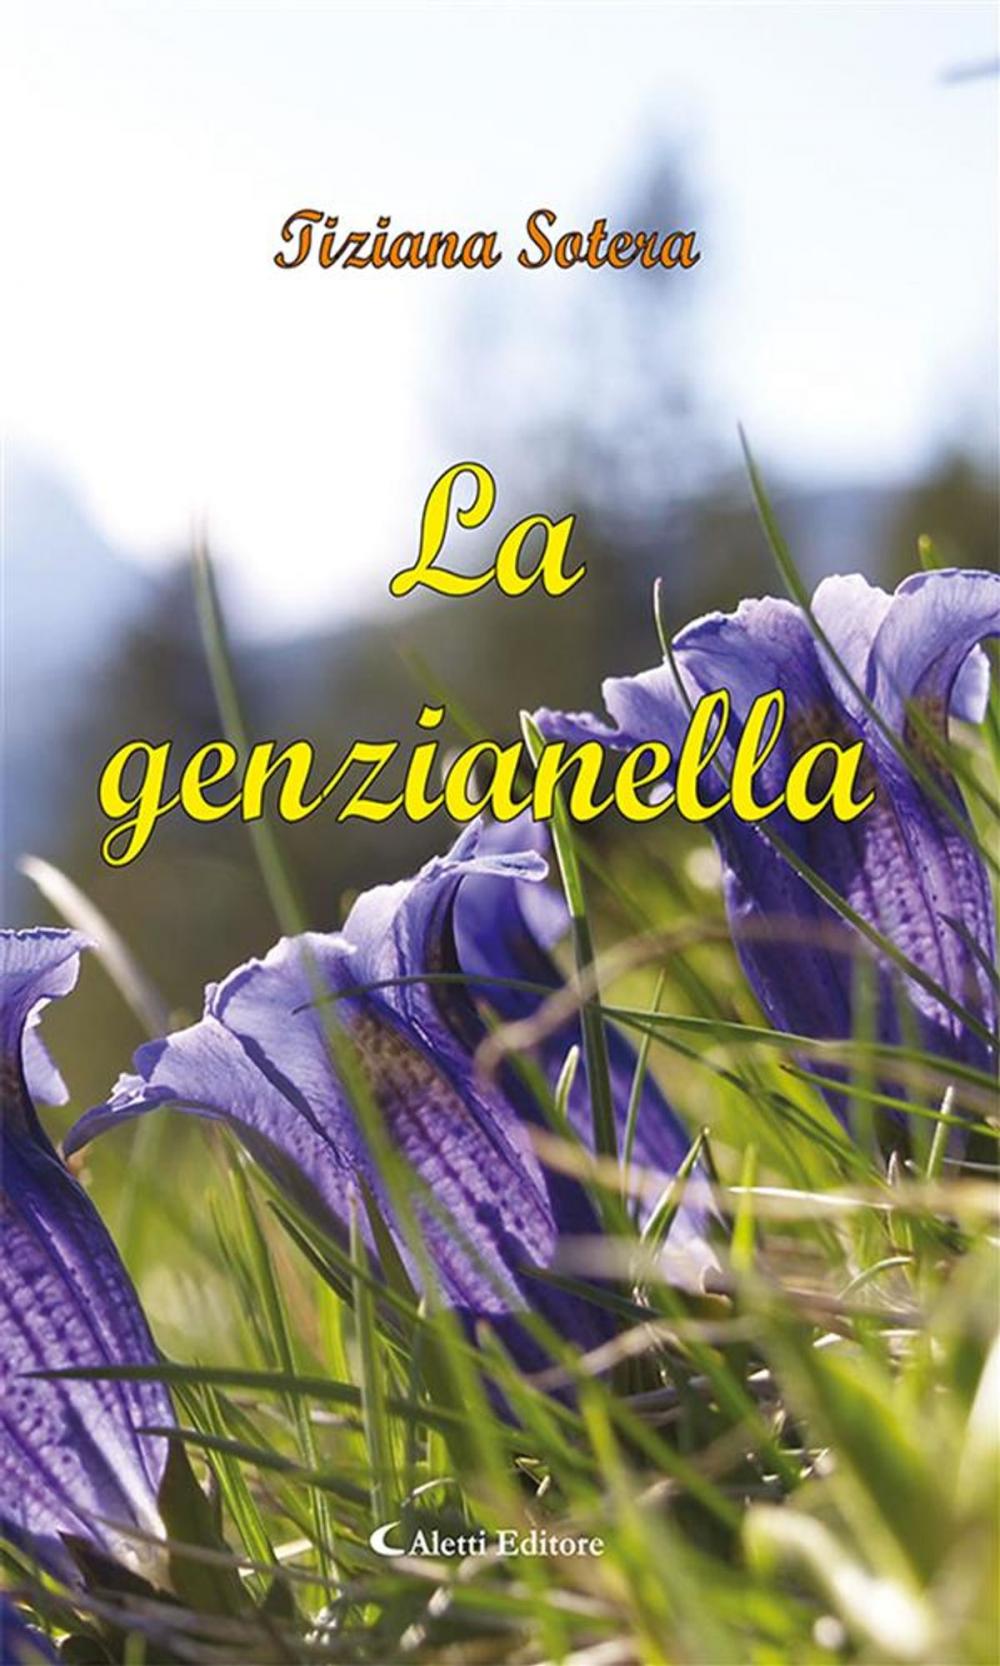 Big bigCover of La genzianella